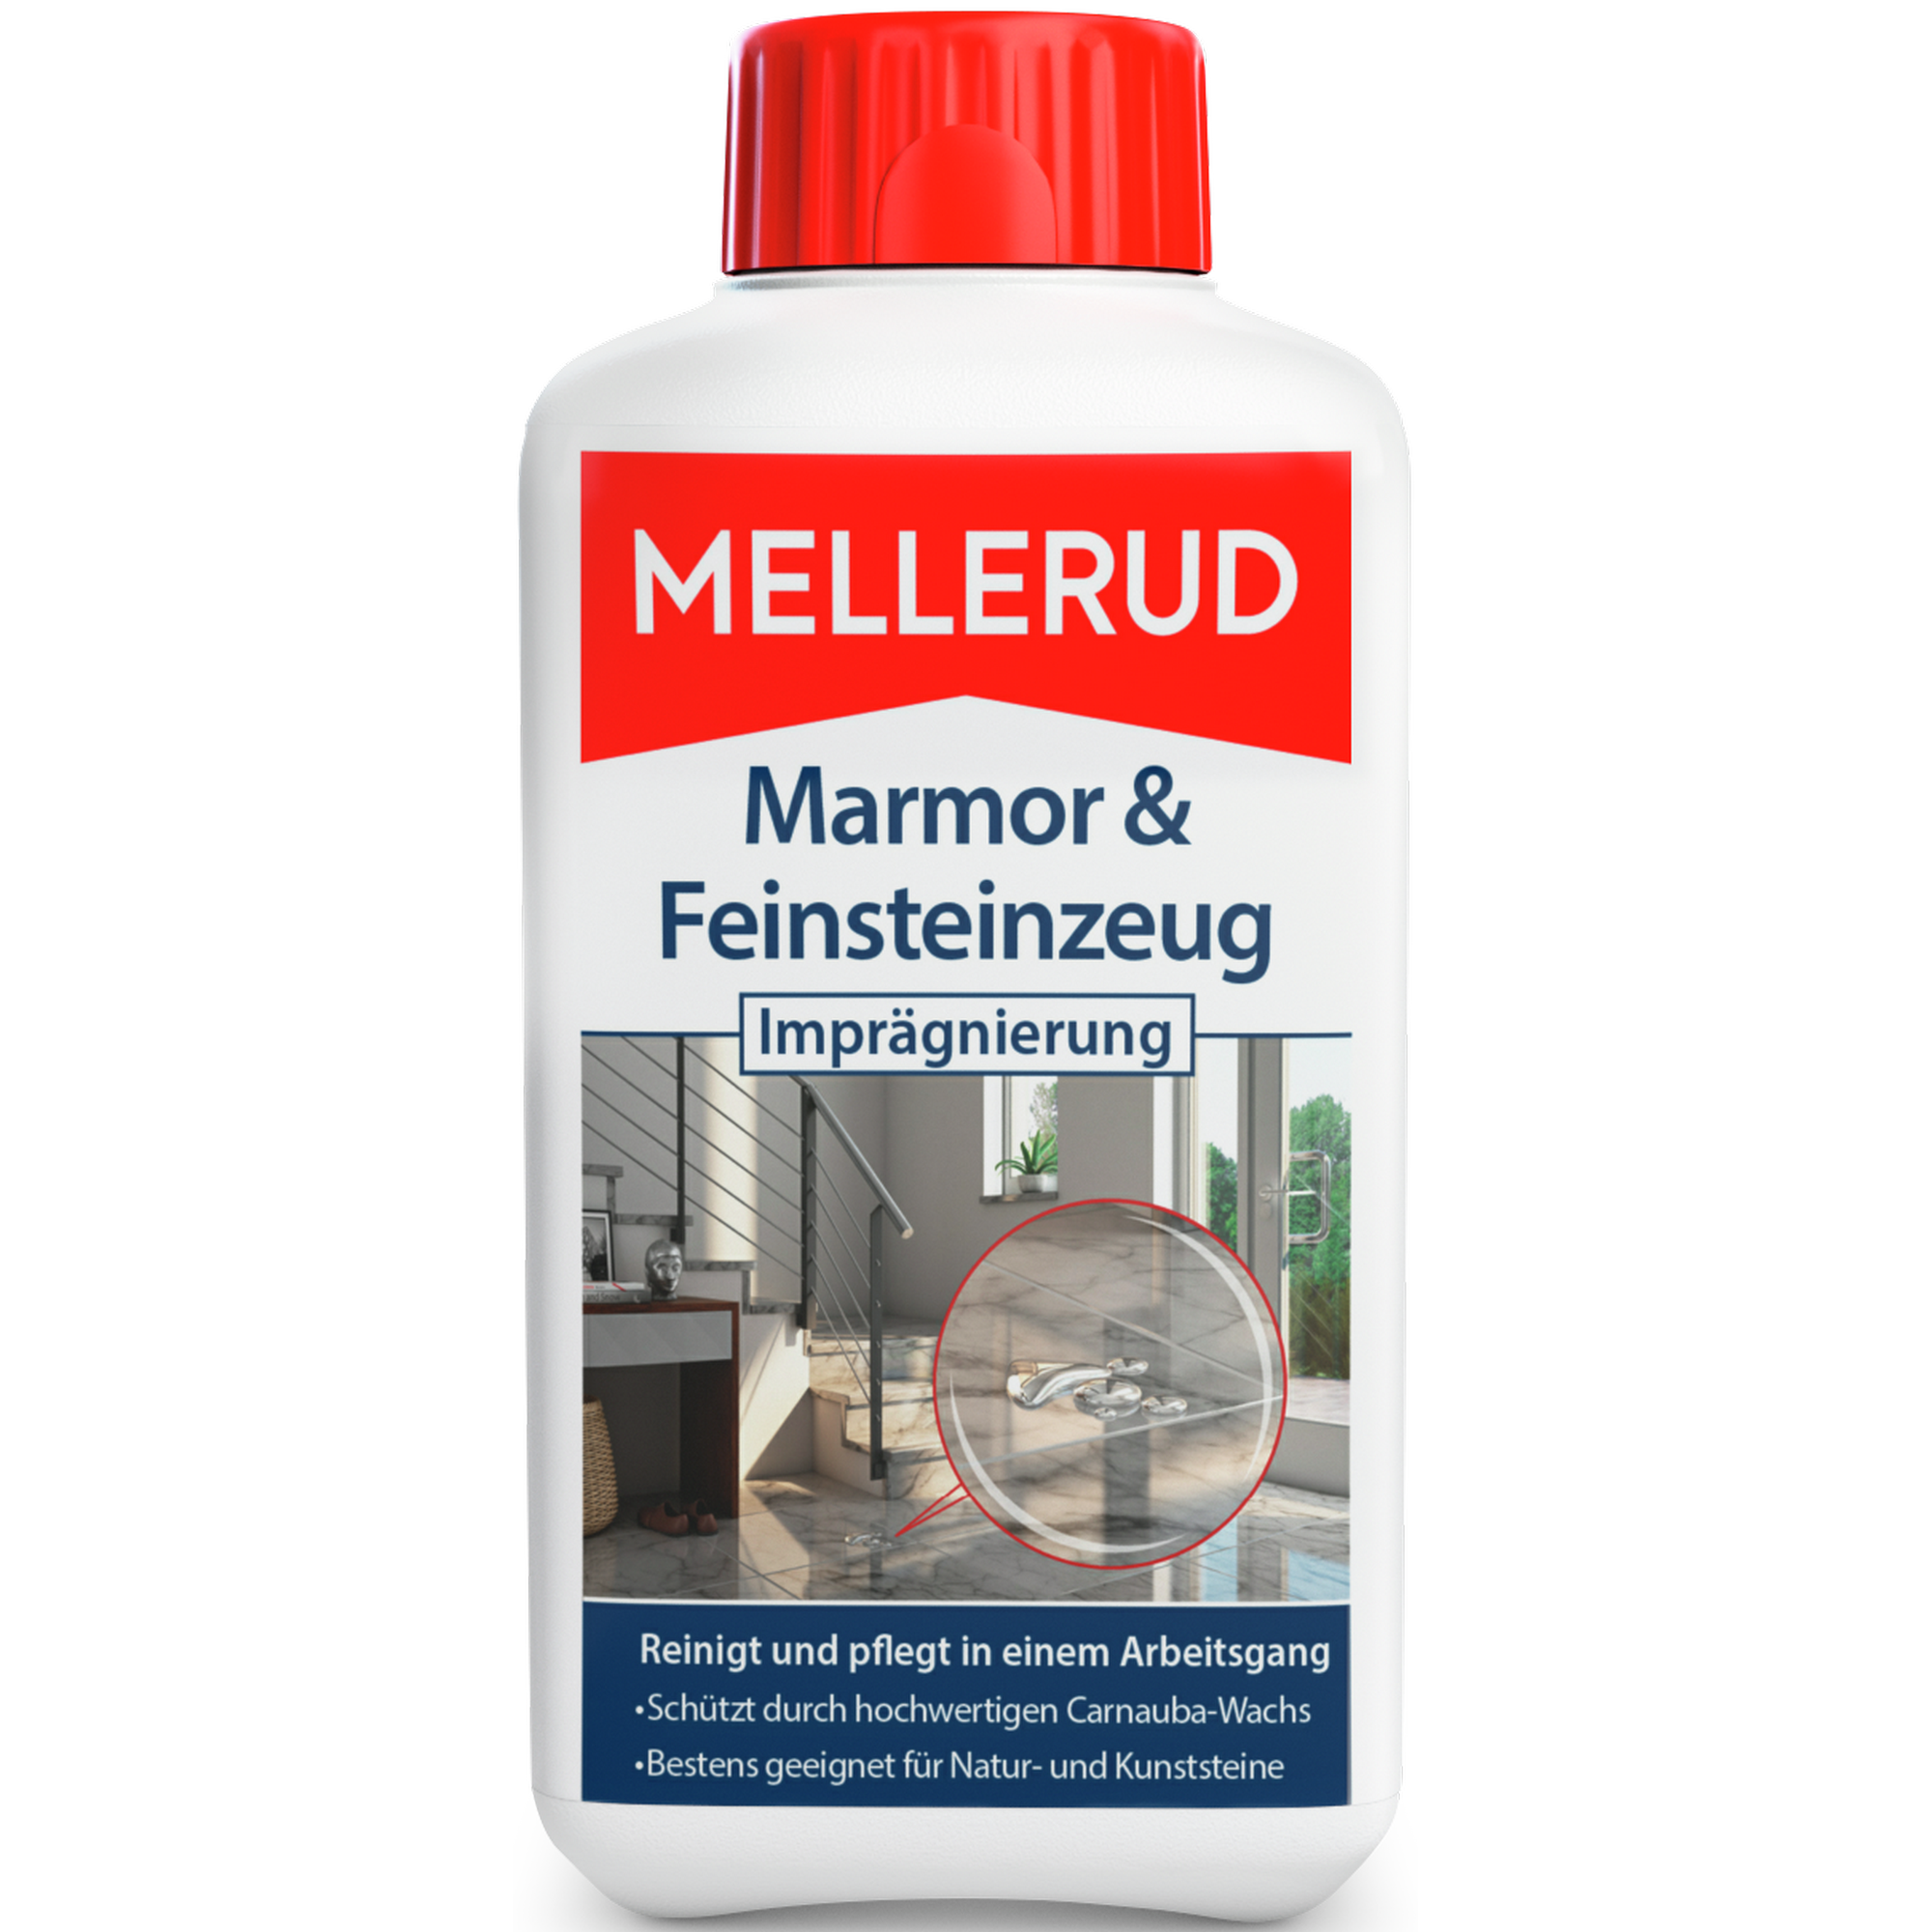 Imprägnierung "Spezialschutz" für Marmor und Naturstein 500 ml + product picture